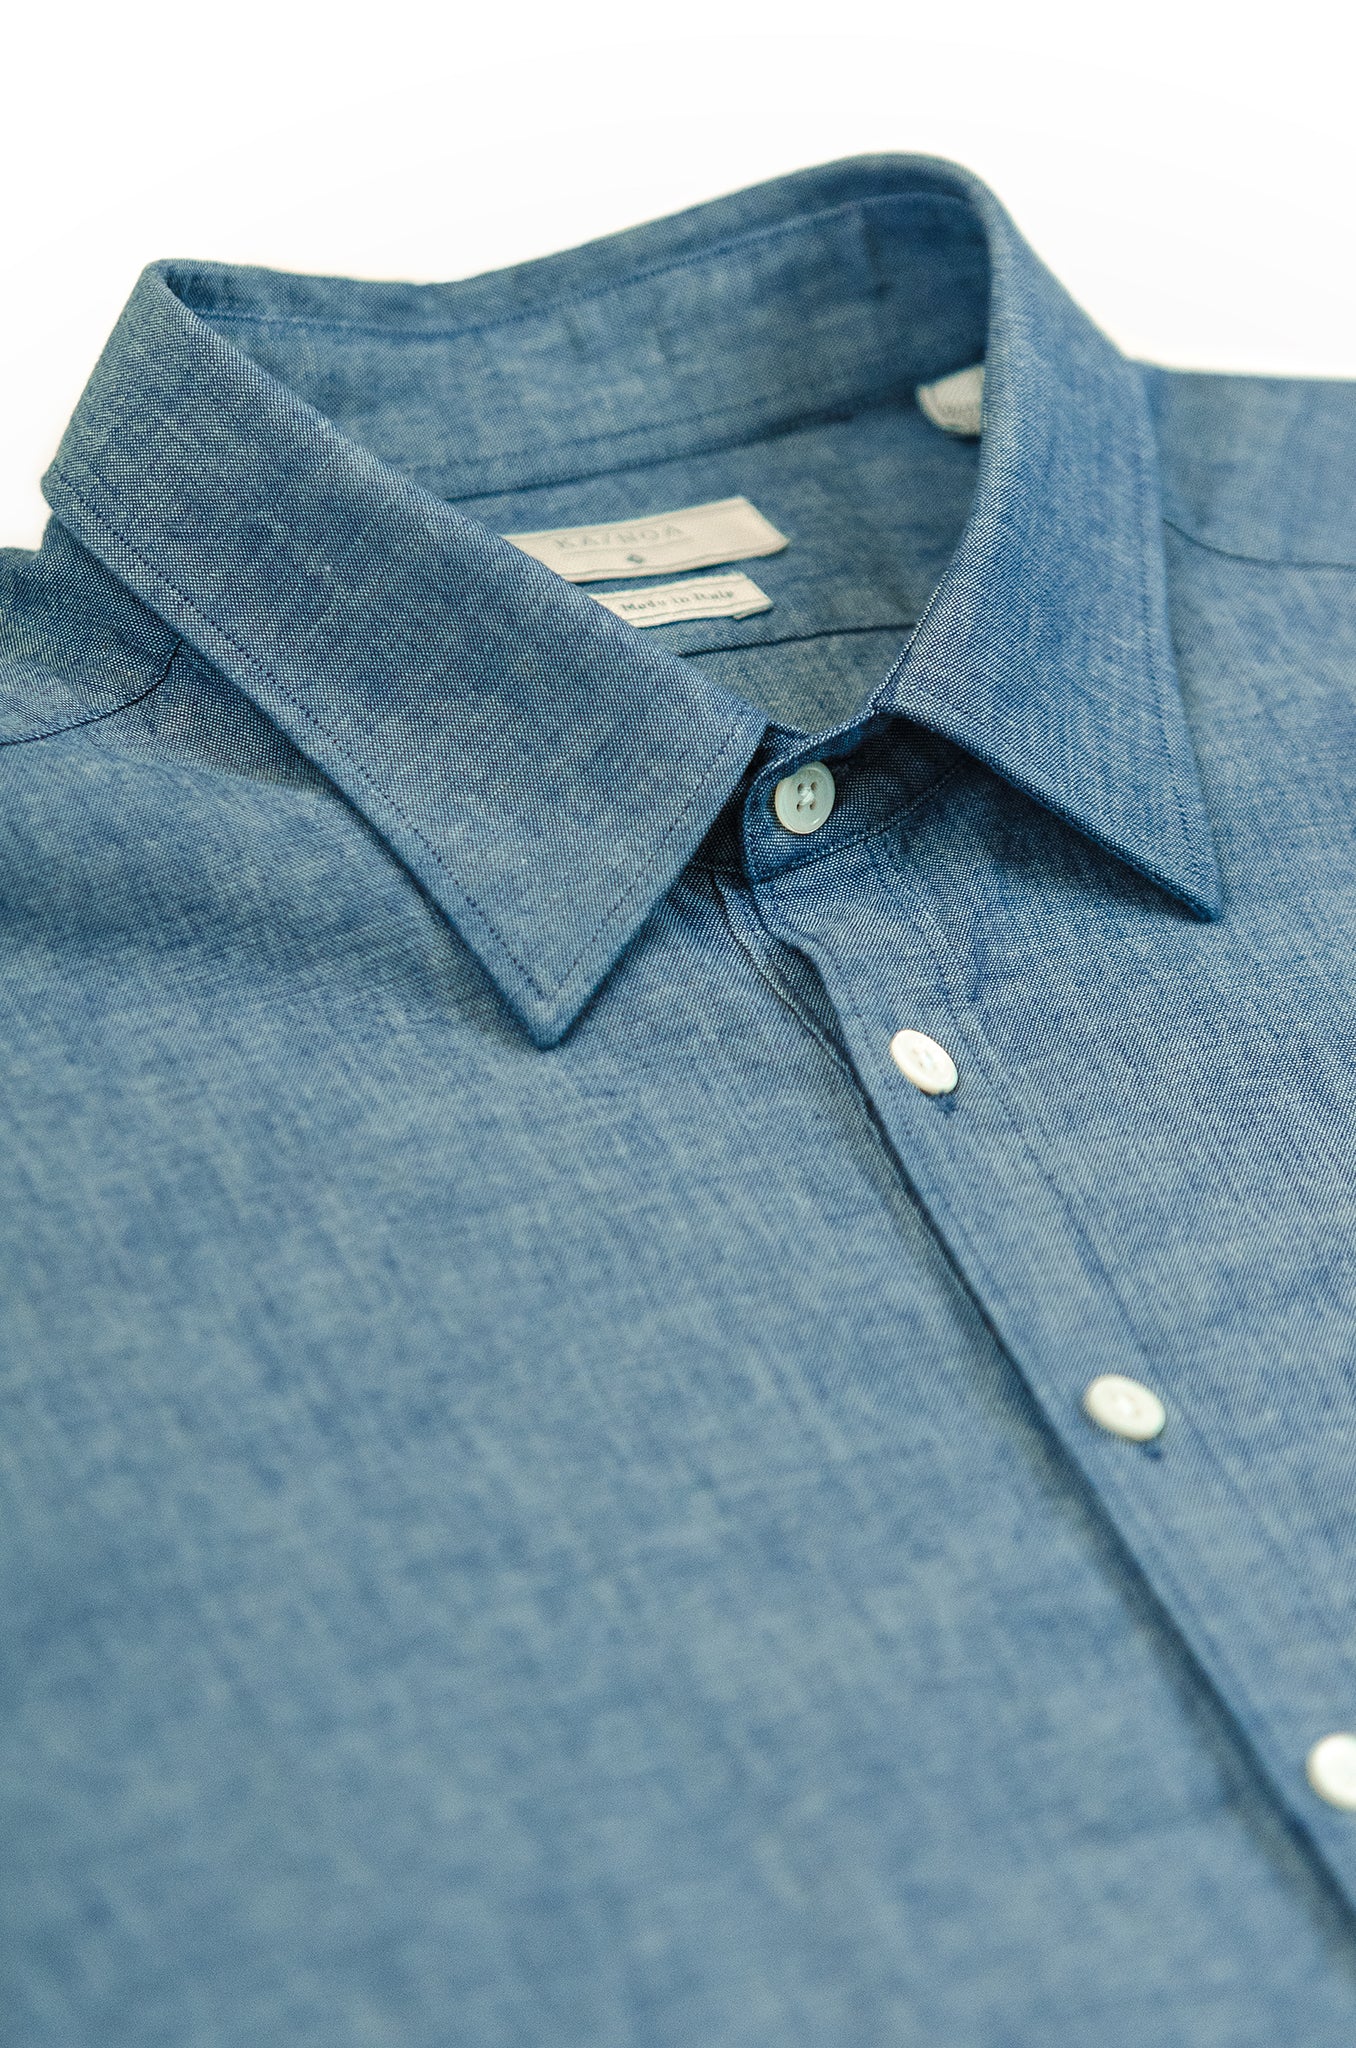 Raimond long-sleeved shirt in indigo cotton (ocean blue)